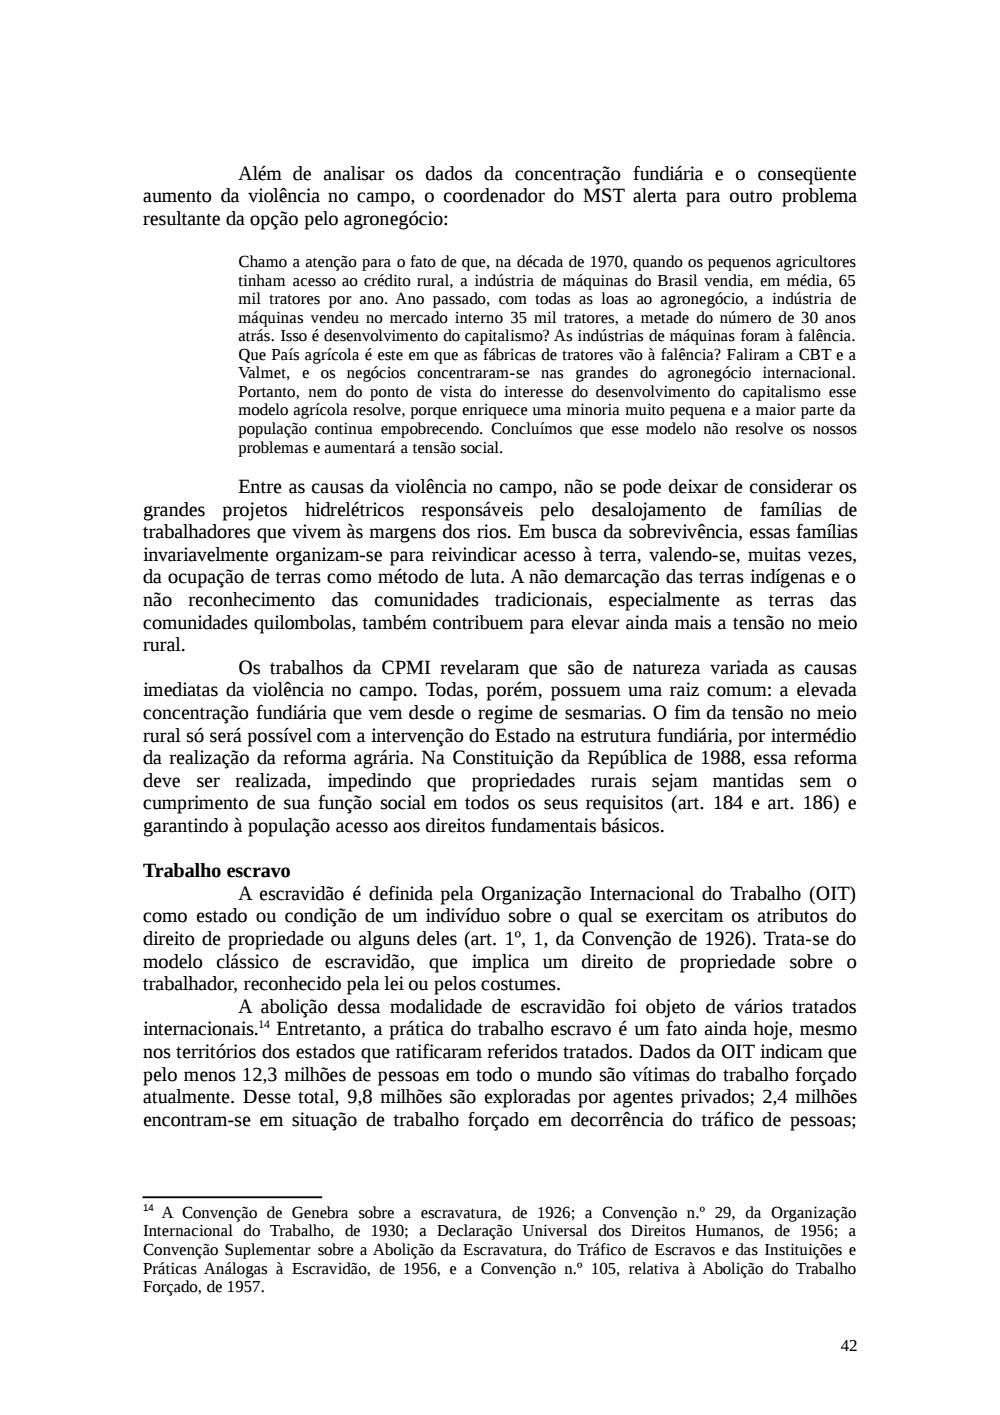 Page 42 from Relatório final da comissão